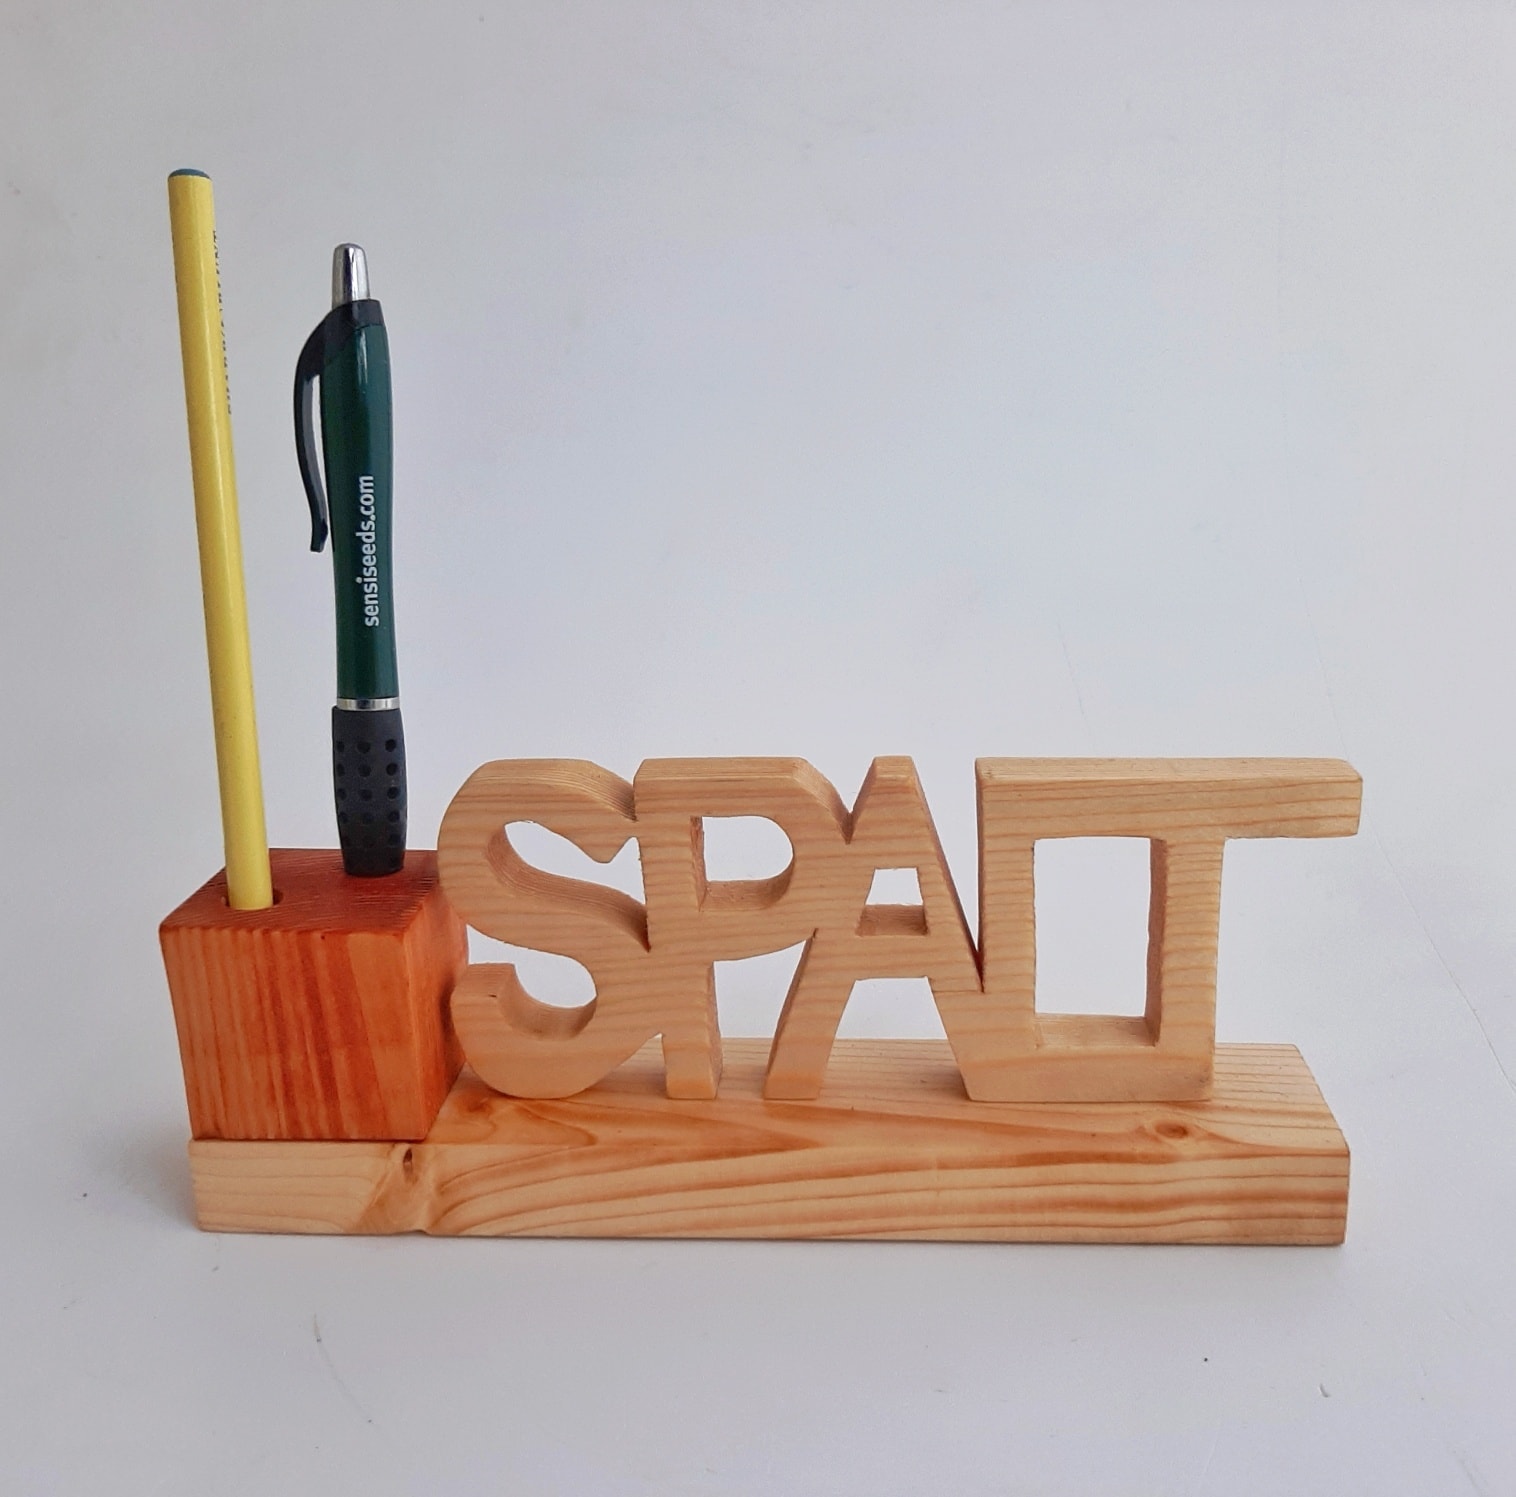 Suport de pixuri și creioane personalizat - Spalt